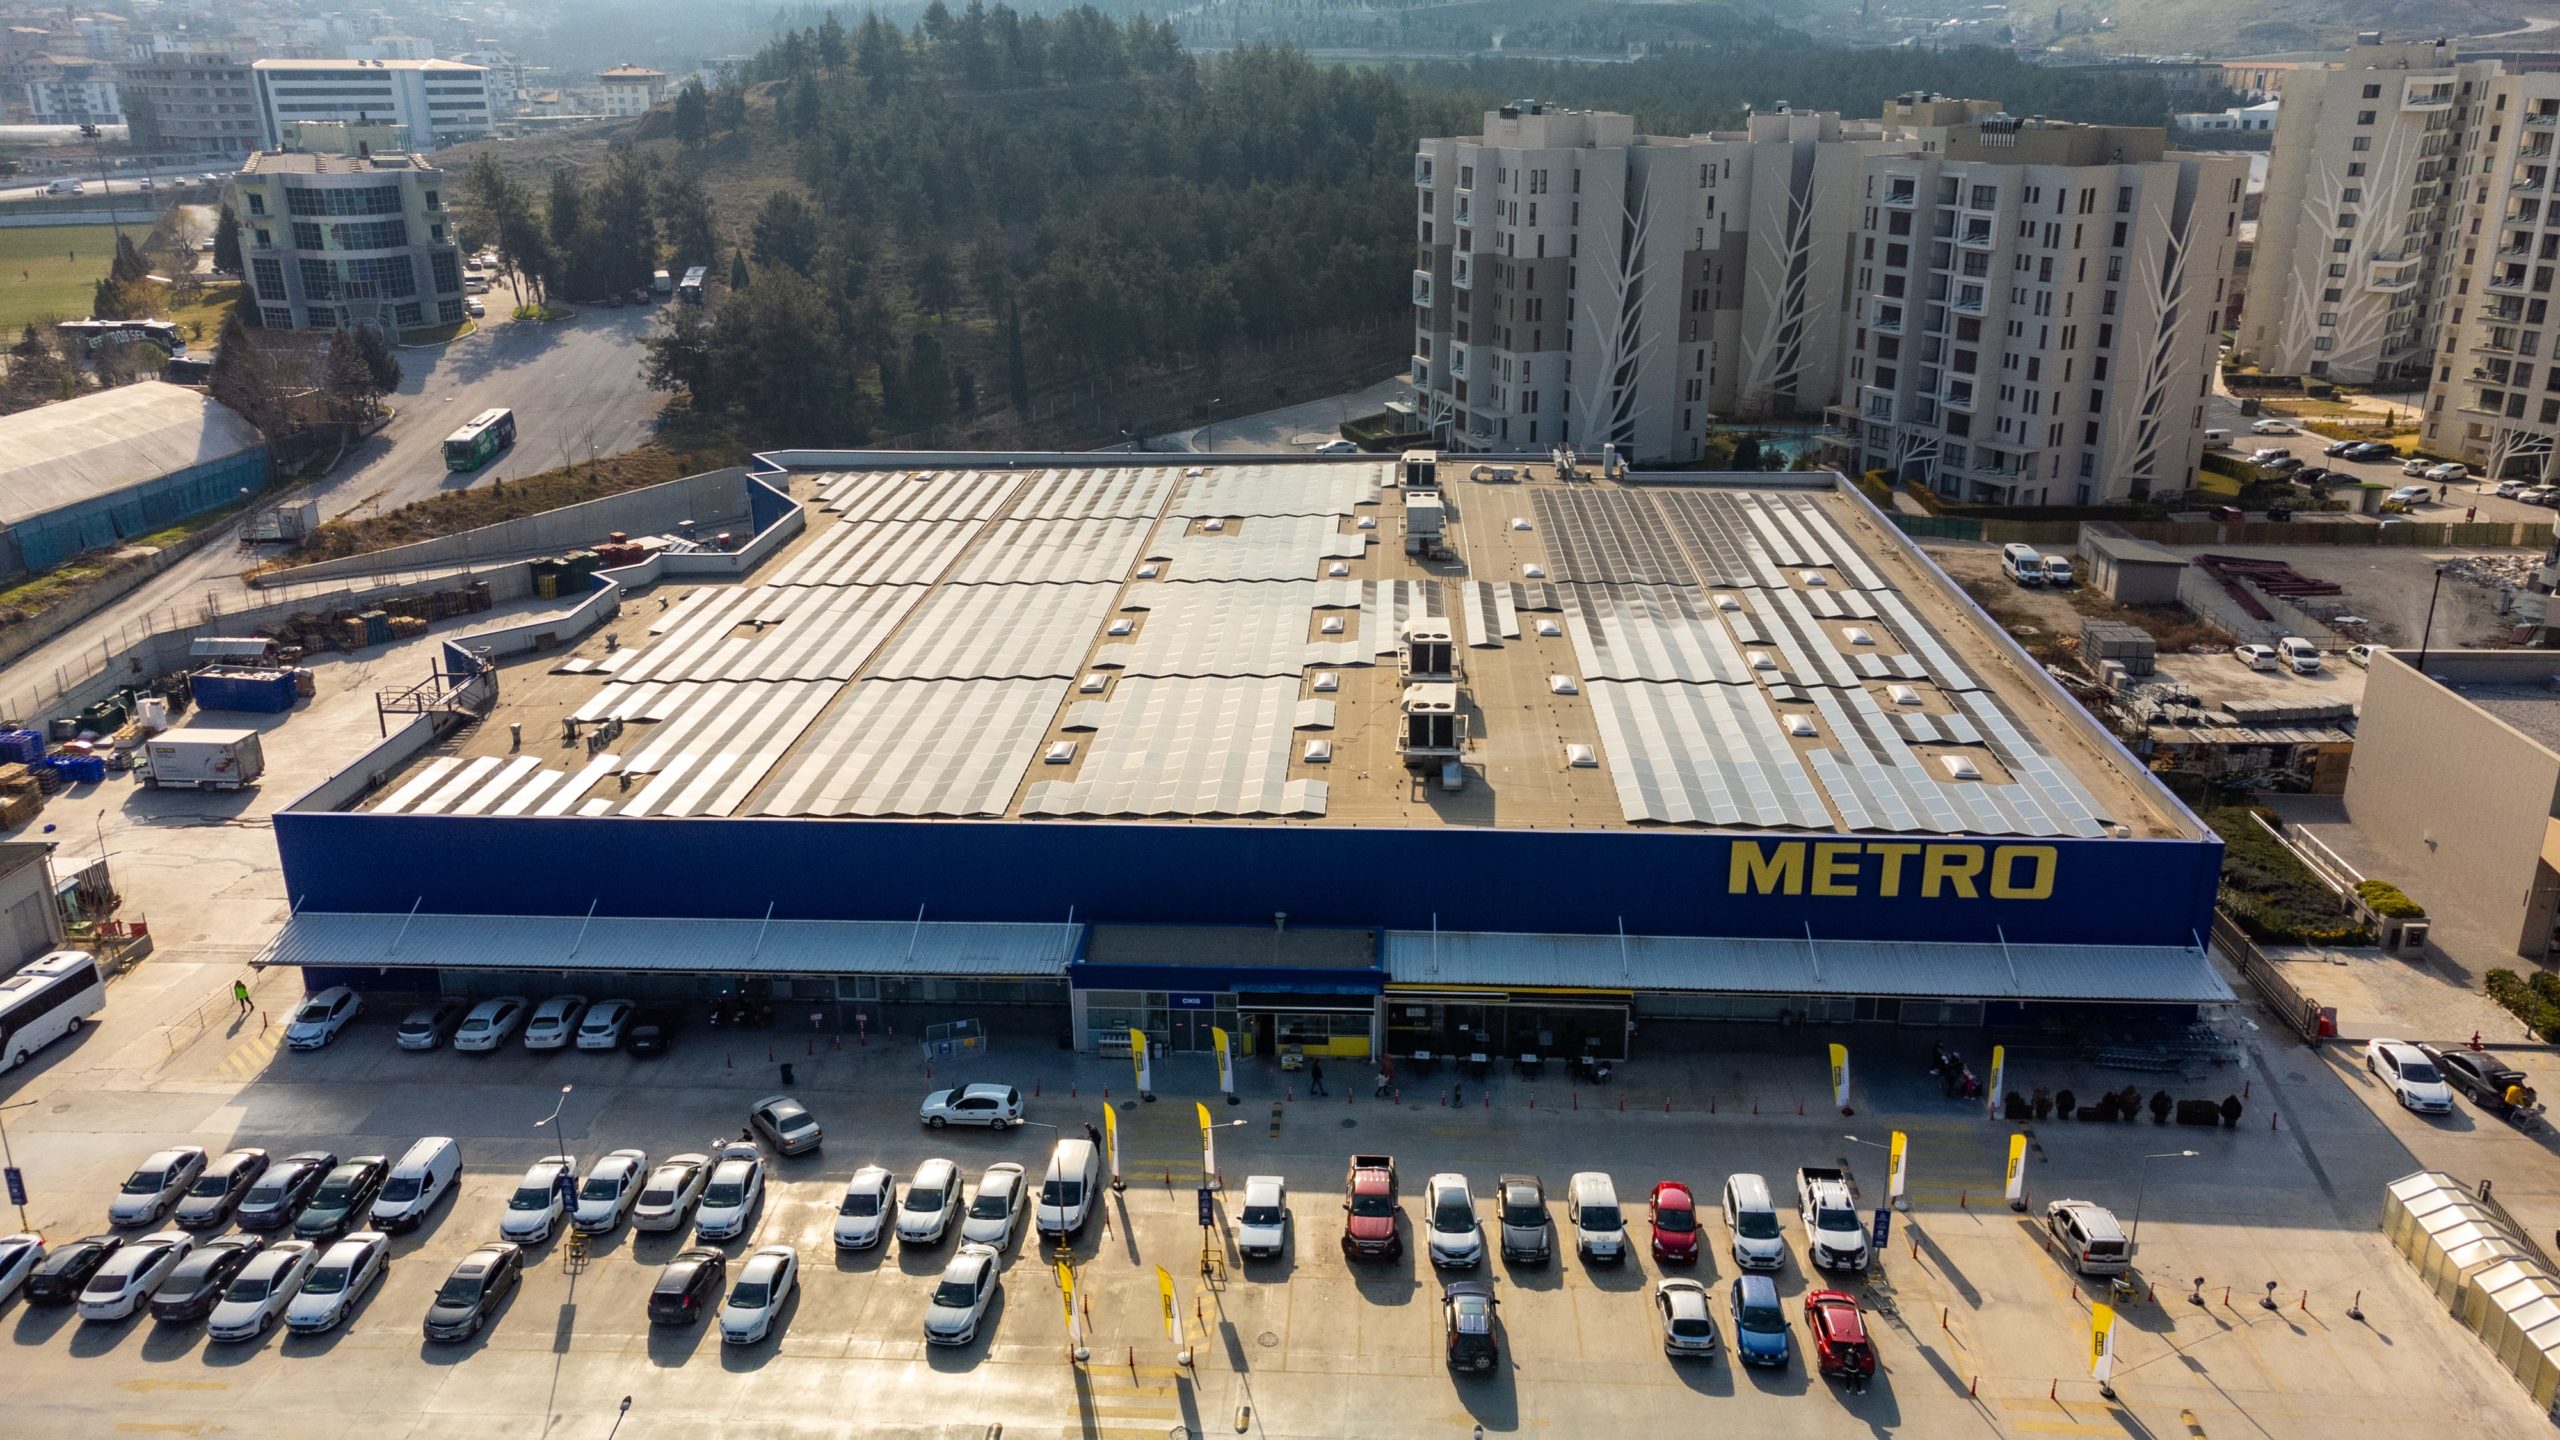 Metro Türkiye’nin 15 mağazasında elektrik ihtiyacının yüzde 70’ten fazlası güneş enerjisi sistemi ile karşılanıyor